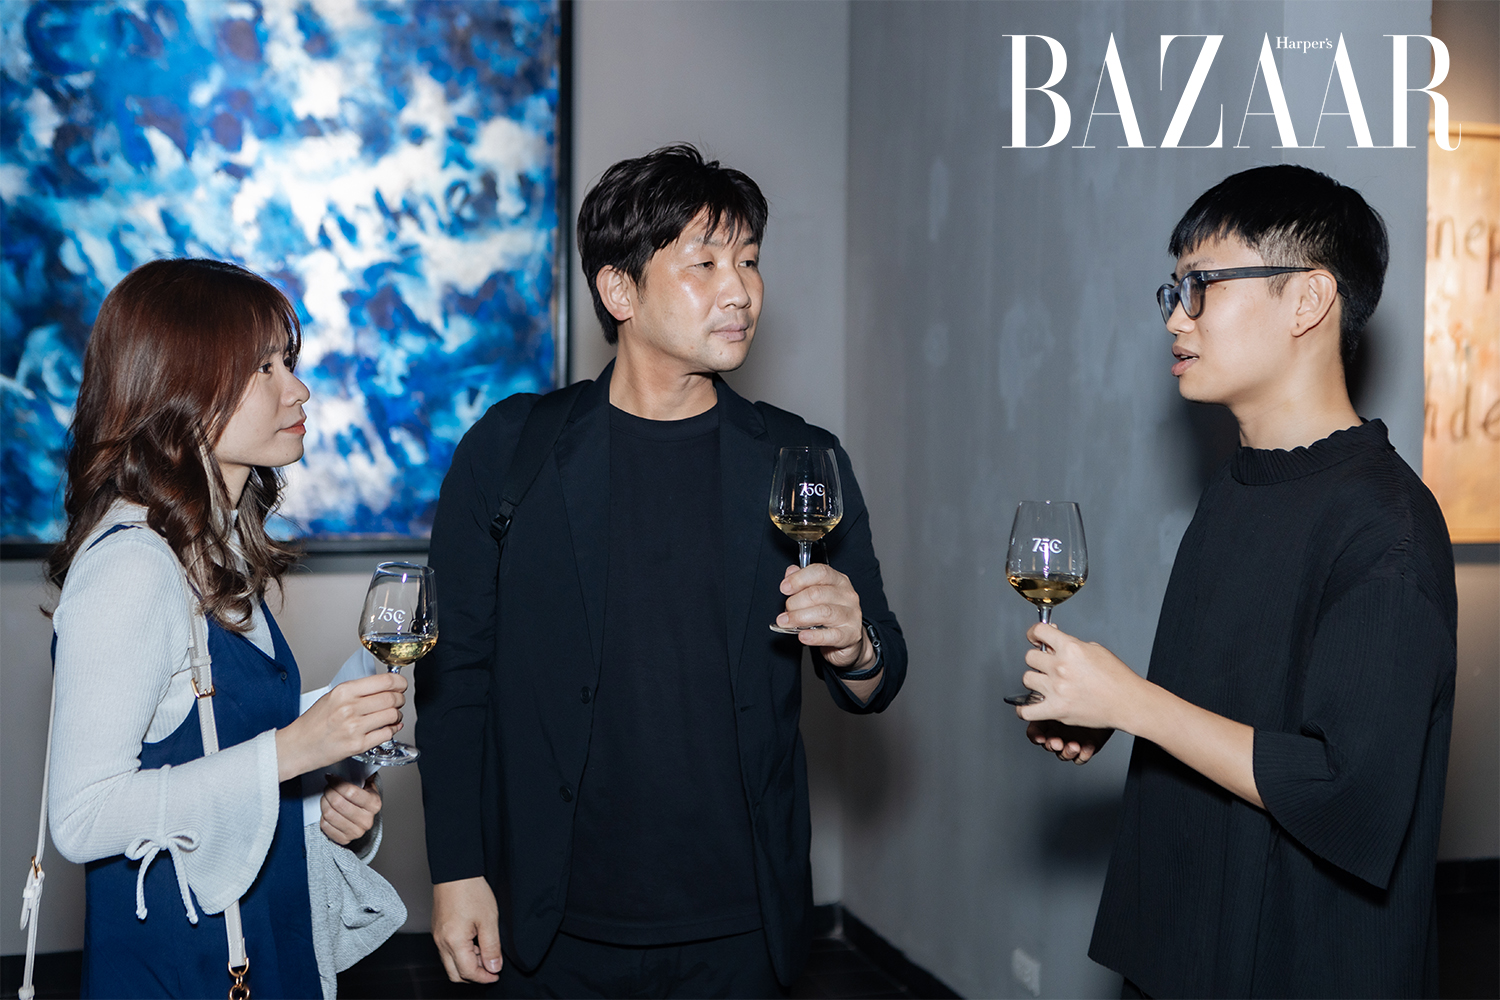 Harper's Bazaar_Triển lãm solo exhibition của đạo diễn Ngạc Lâm Vũ_03